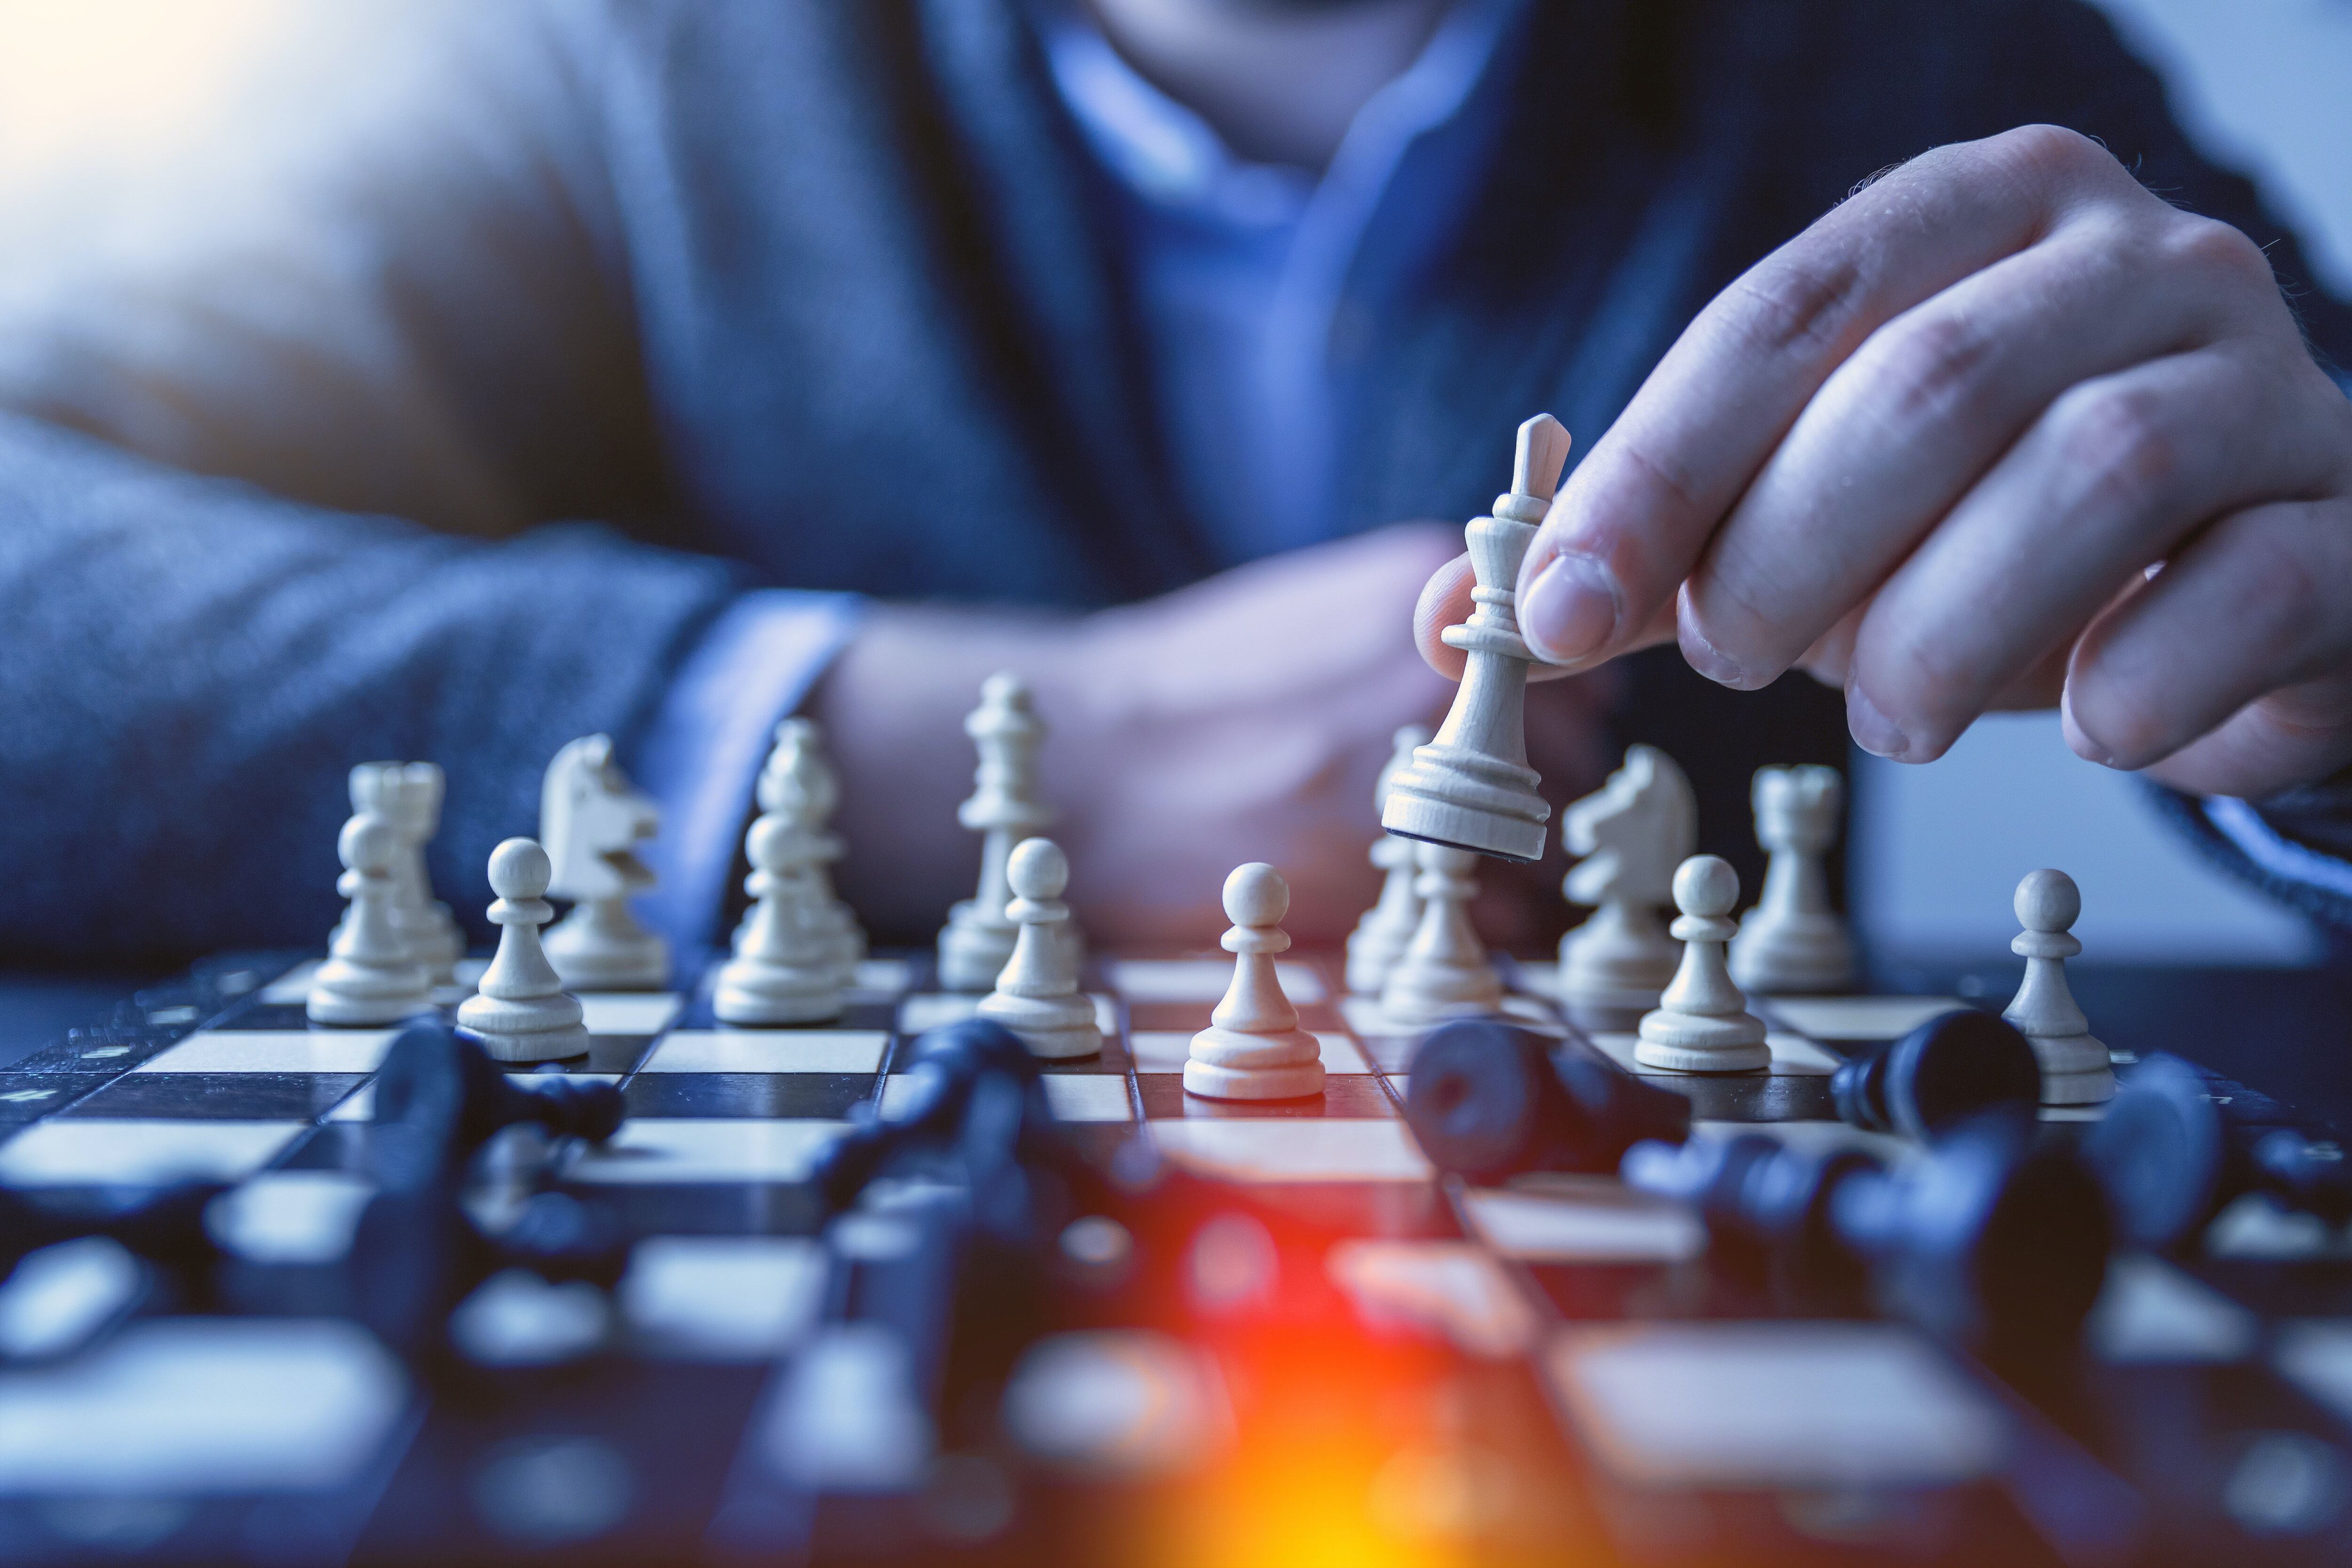 Investigação sugere trapaça em jogos de xadrez online, mas mistério continua